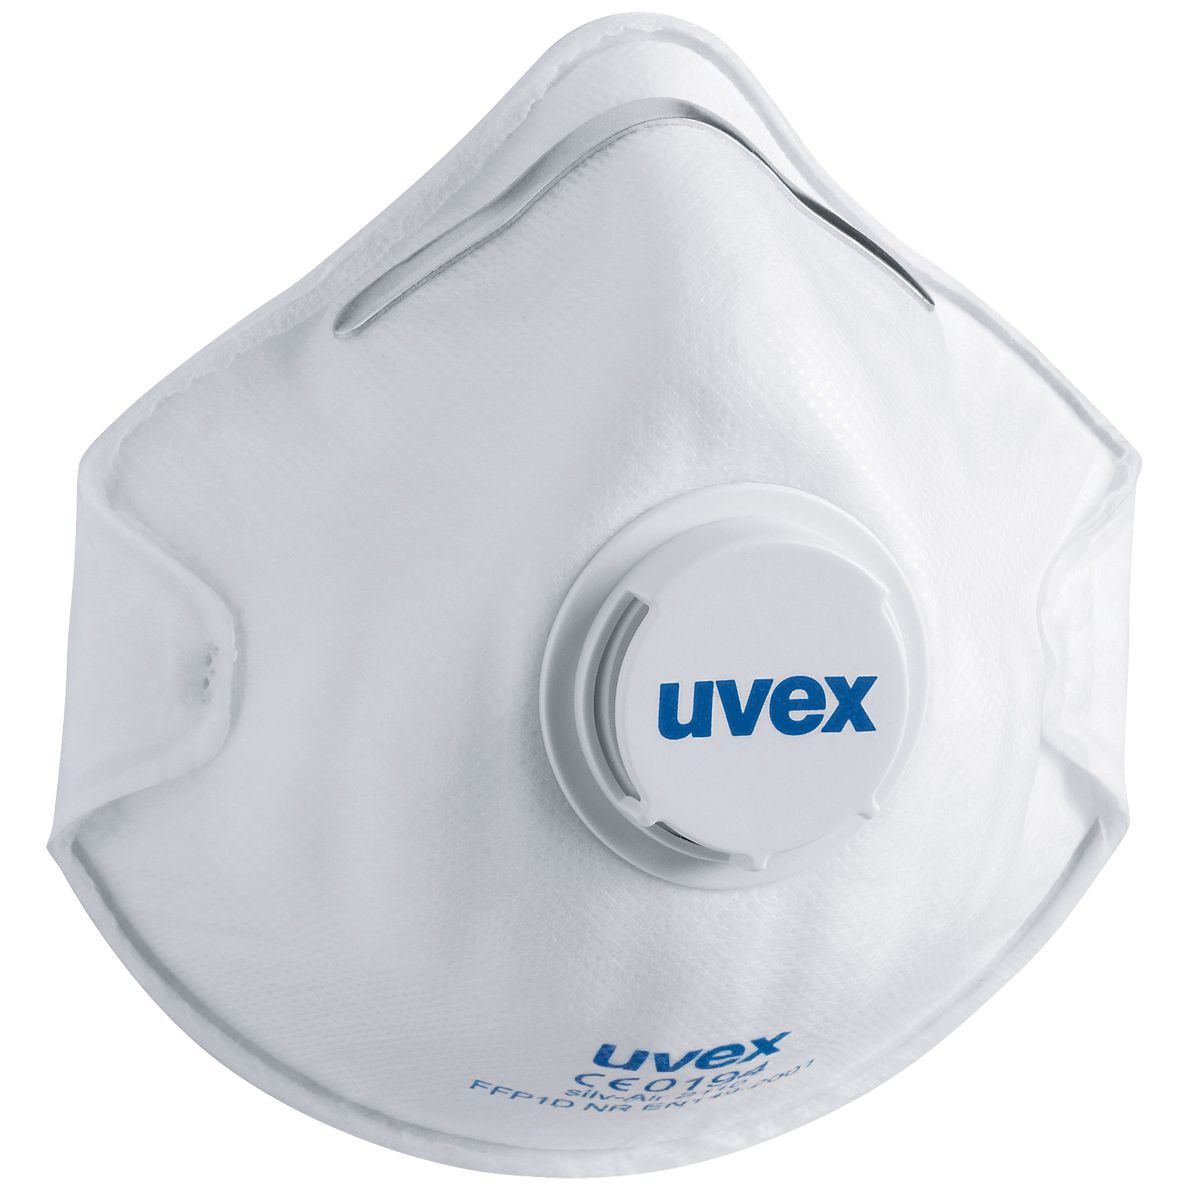 uvex silv-Air c 2110 Staubmaske - FFP1-Staubschutzmaske - Atemmaske mit Ventil